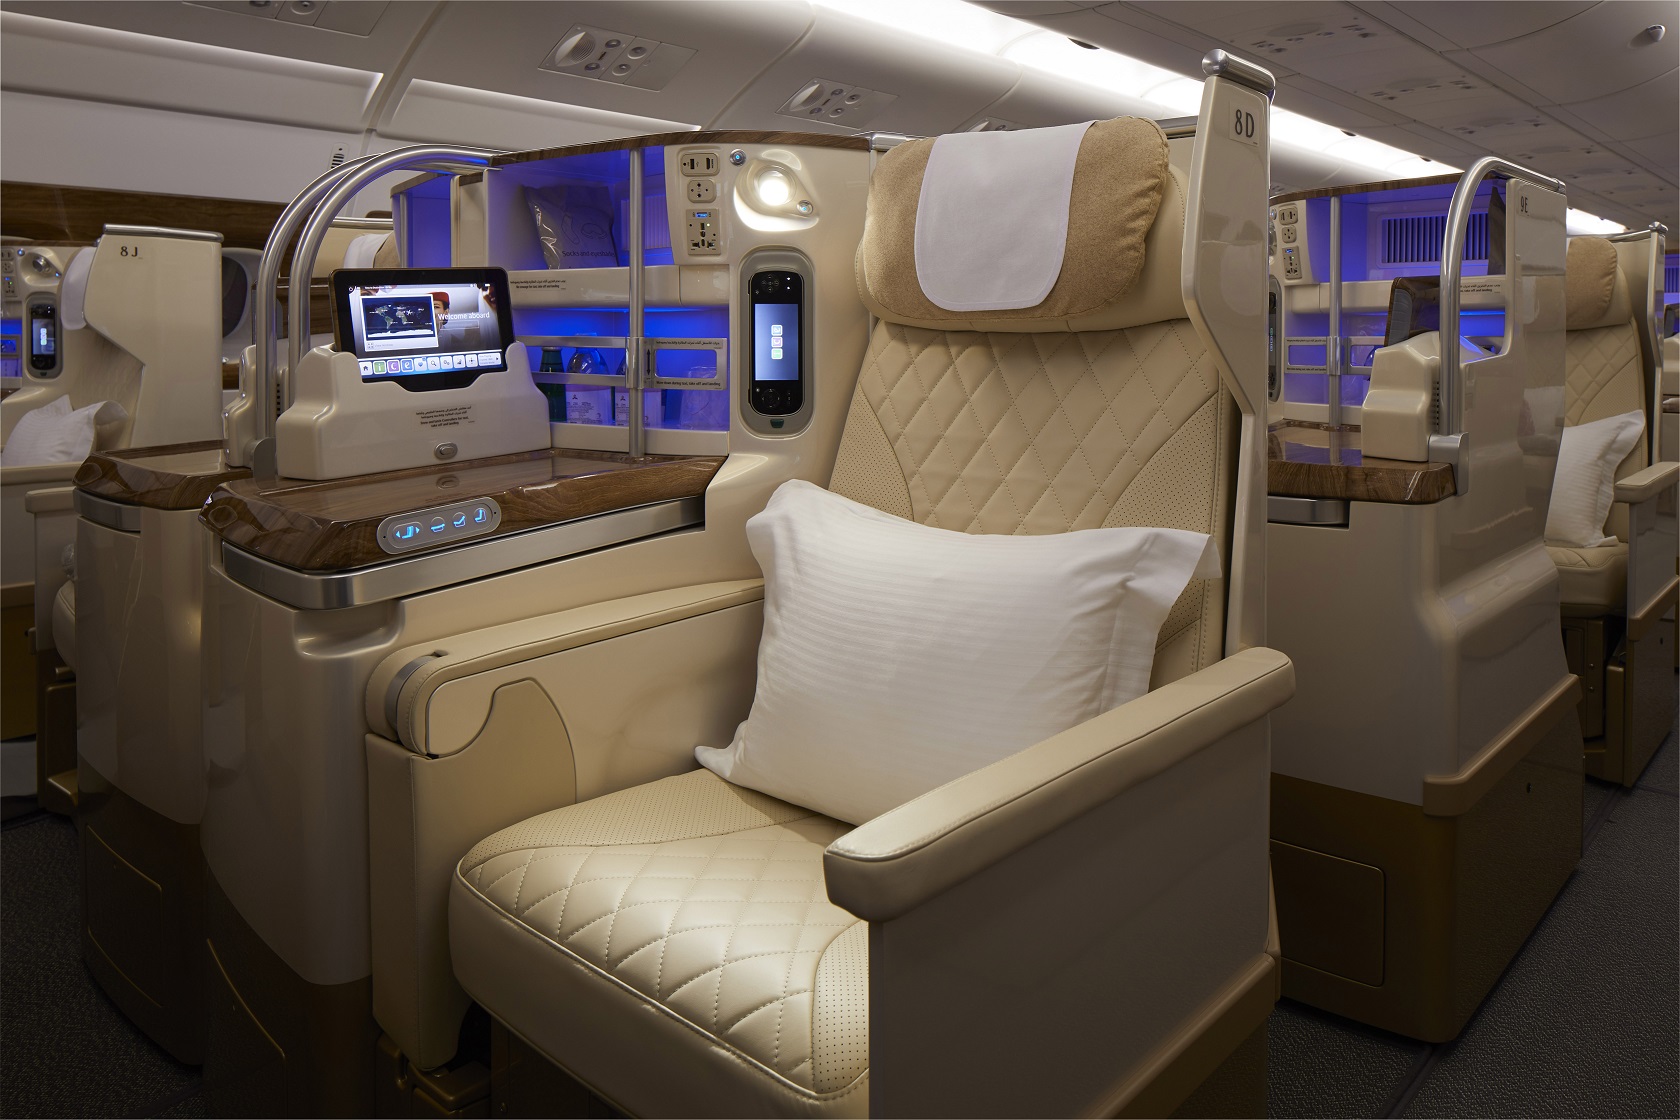 空客A380_飞机之家官网_飞机价格,直升机,直升机租赁,直升机价格,私人飞机价格,通用航空,飞机票查询,机票预订,私人飞机包机_飞机之家